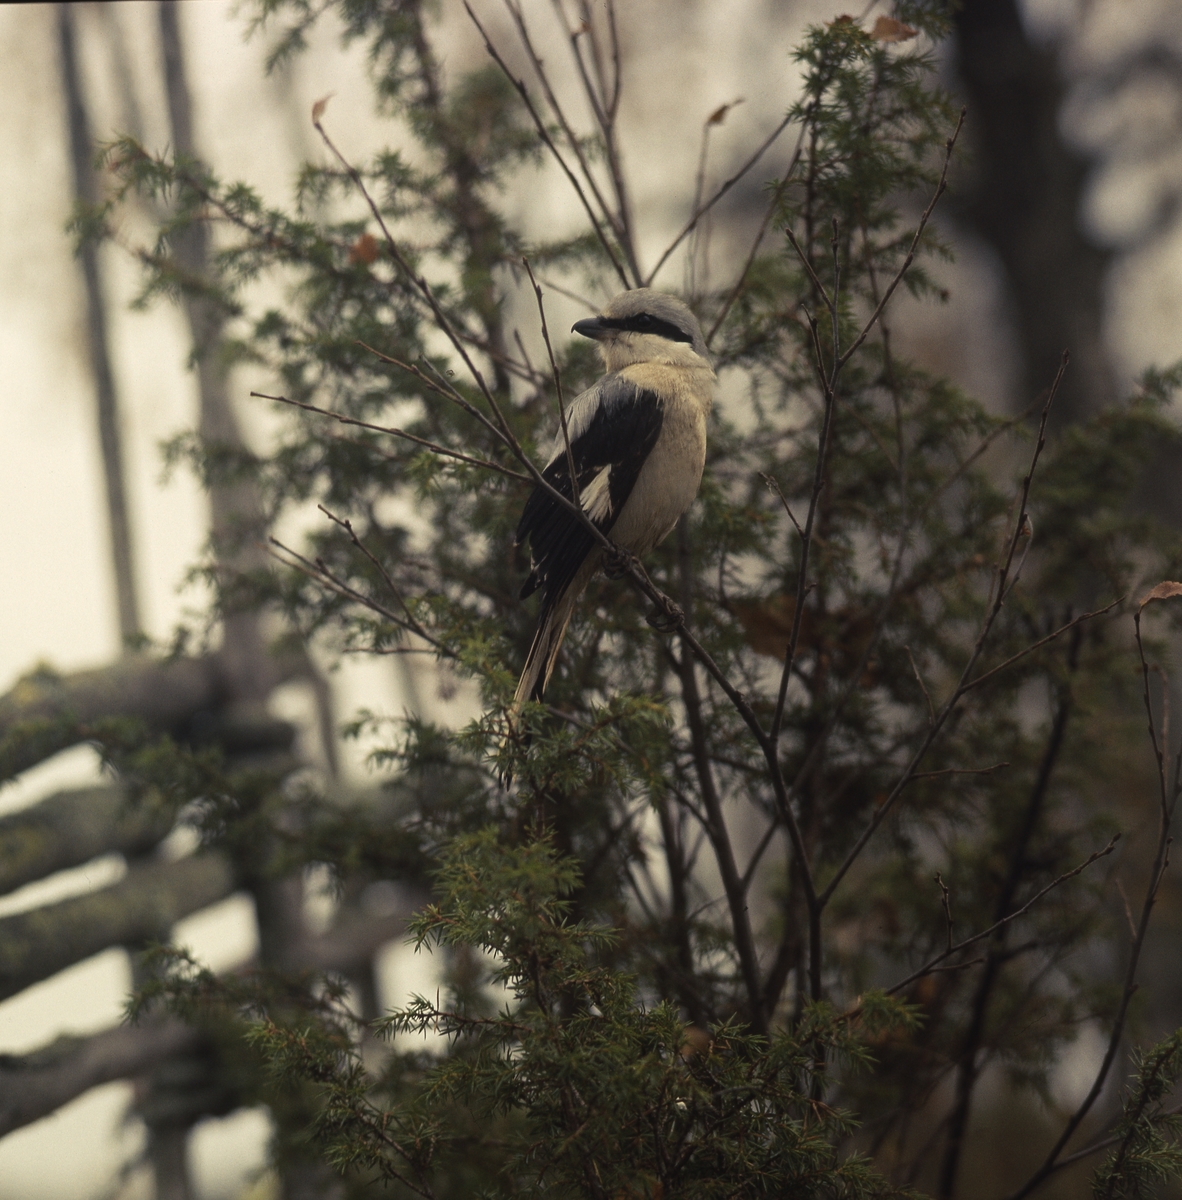 En varfågel sitter på en kvist framför en enbuske och gärdesgård.